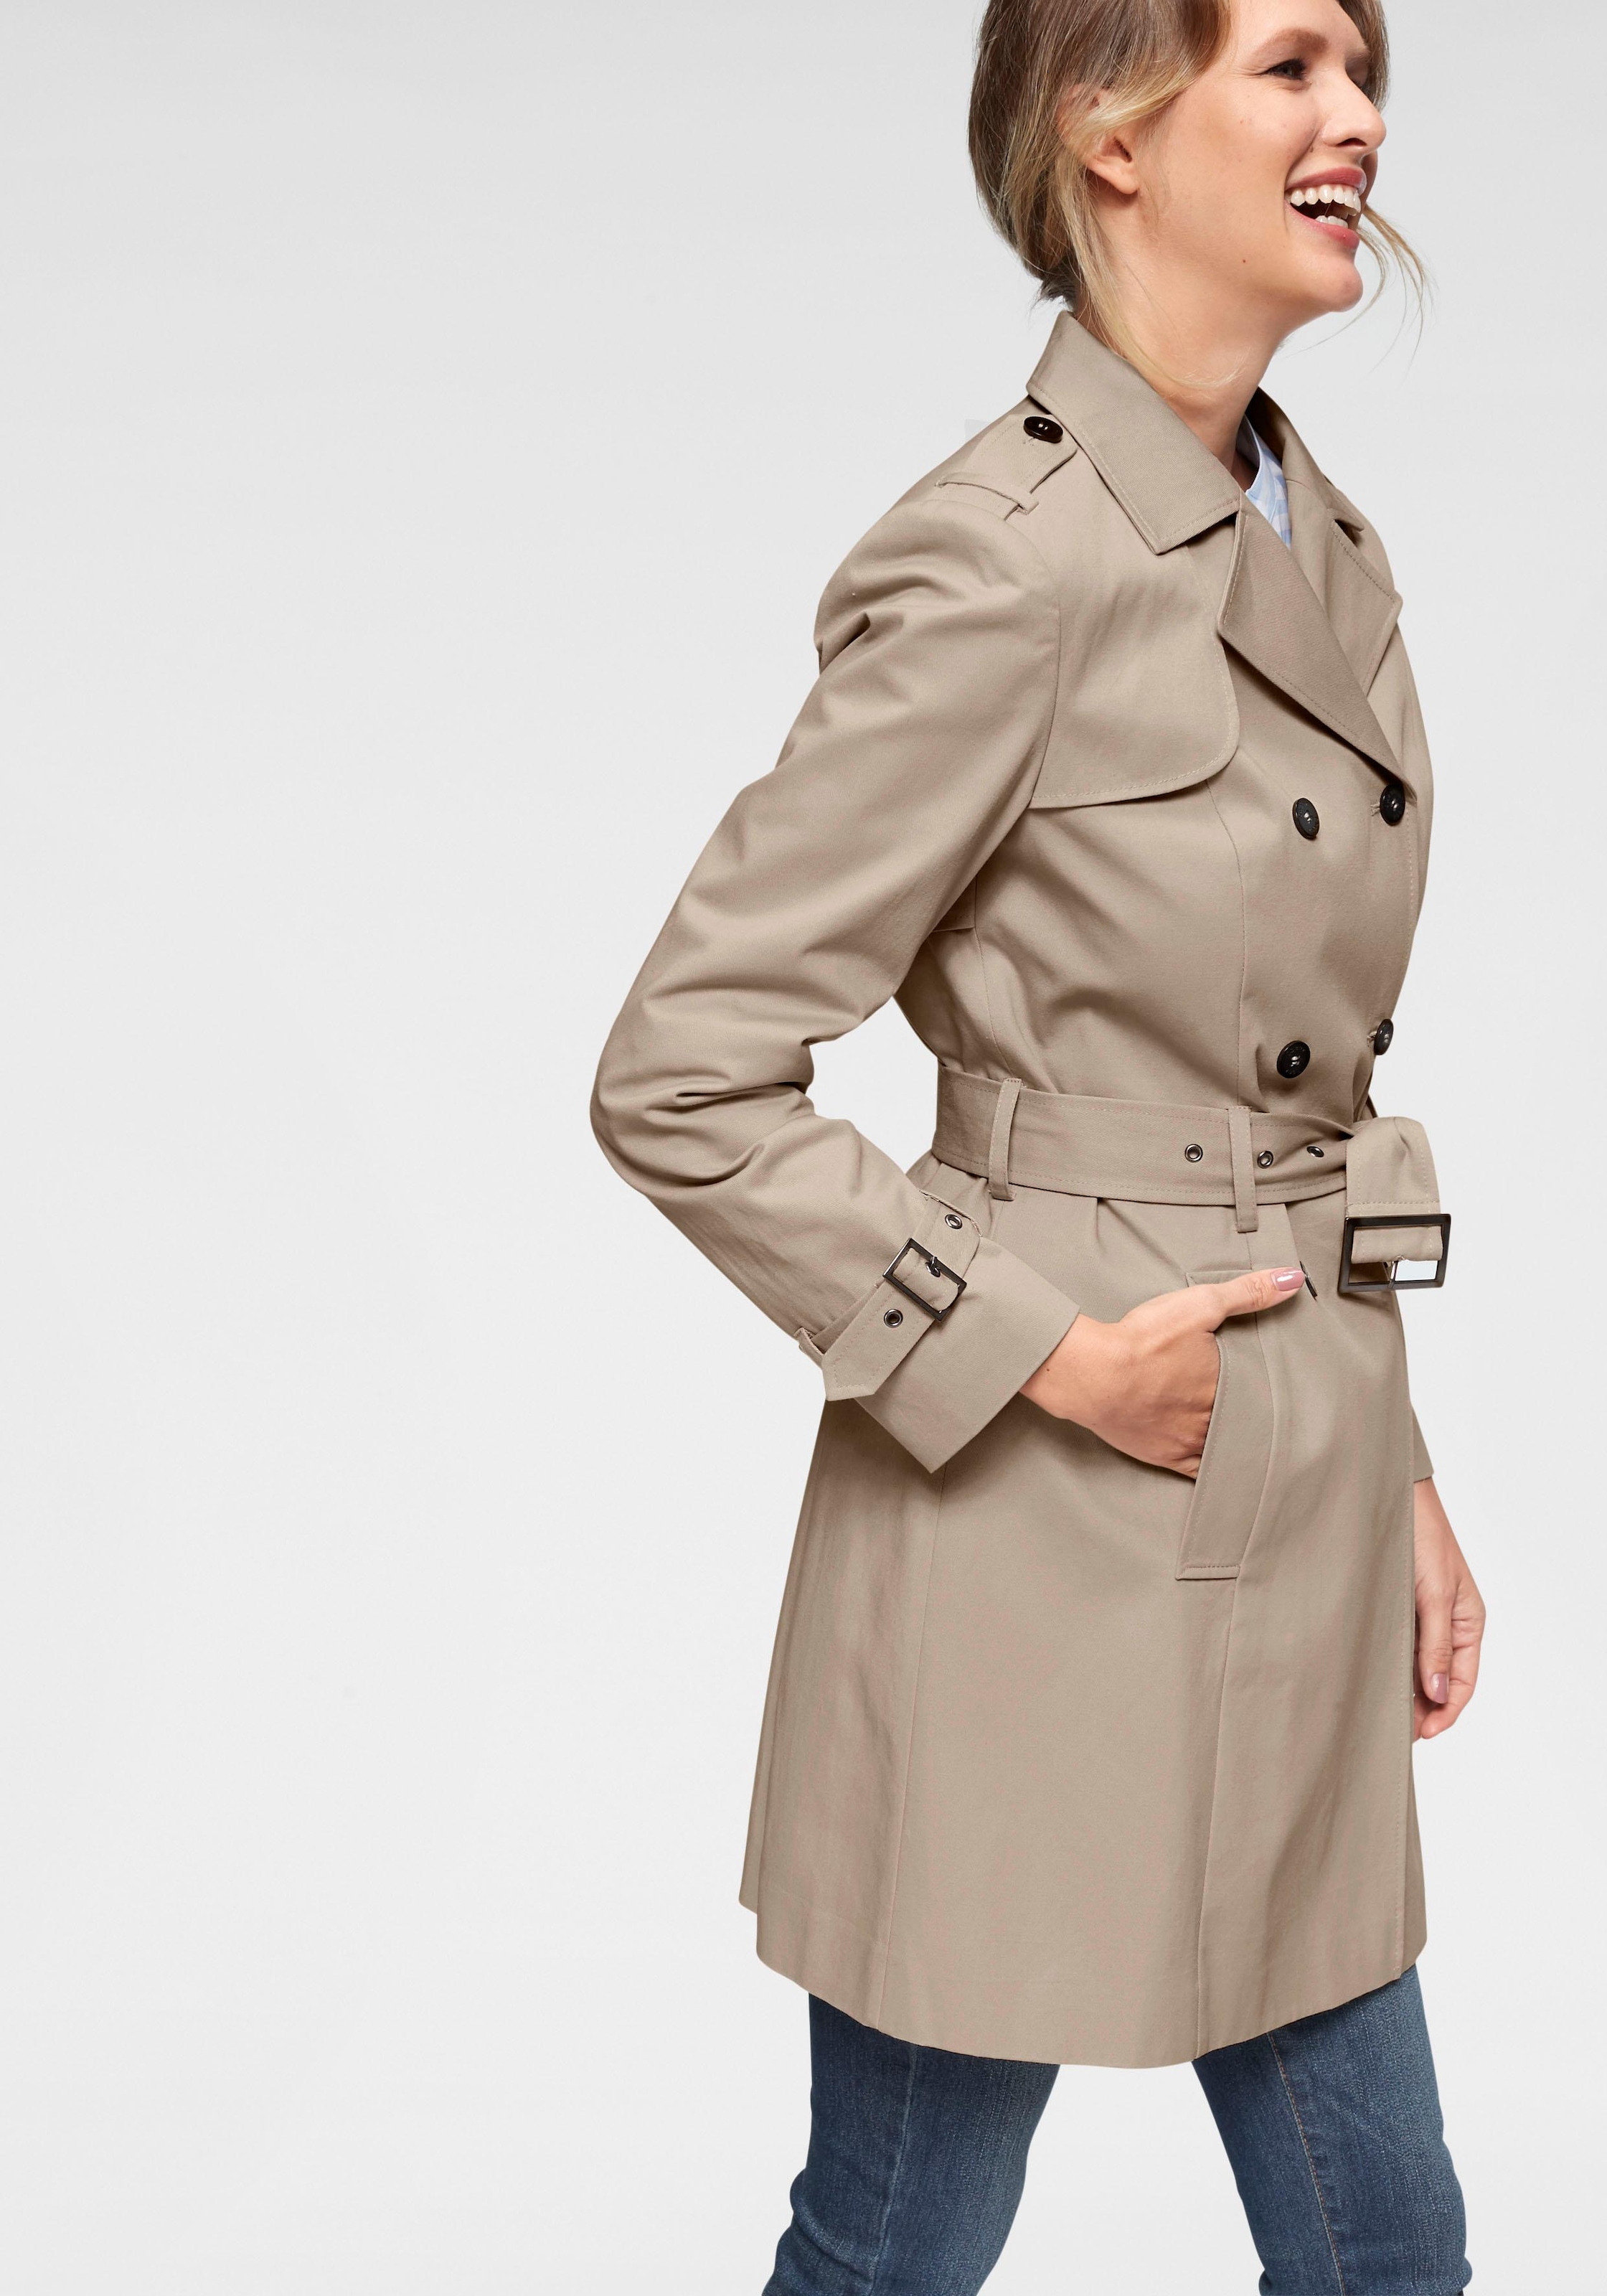 Mantel für Damen online bei Quelle Stilvolle Damenmäntel kaufen 